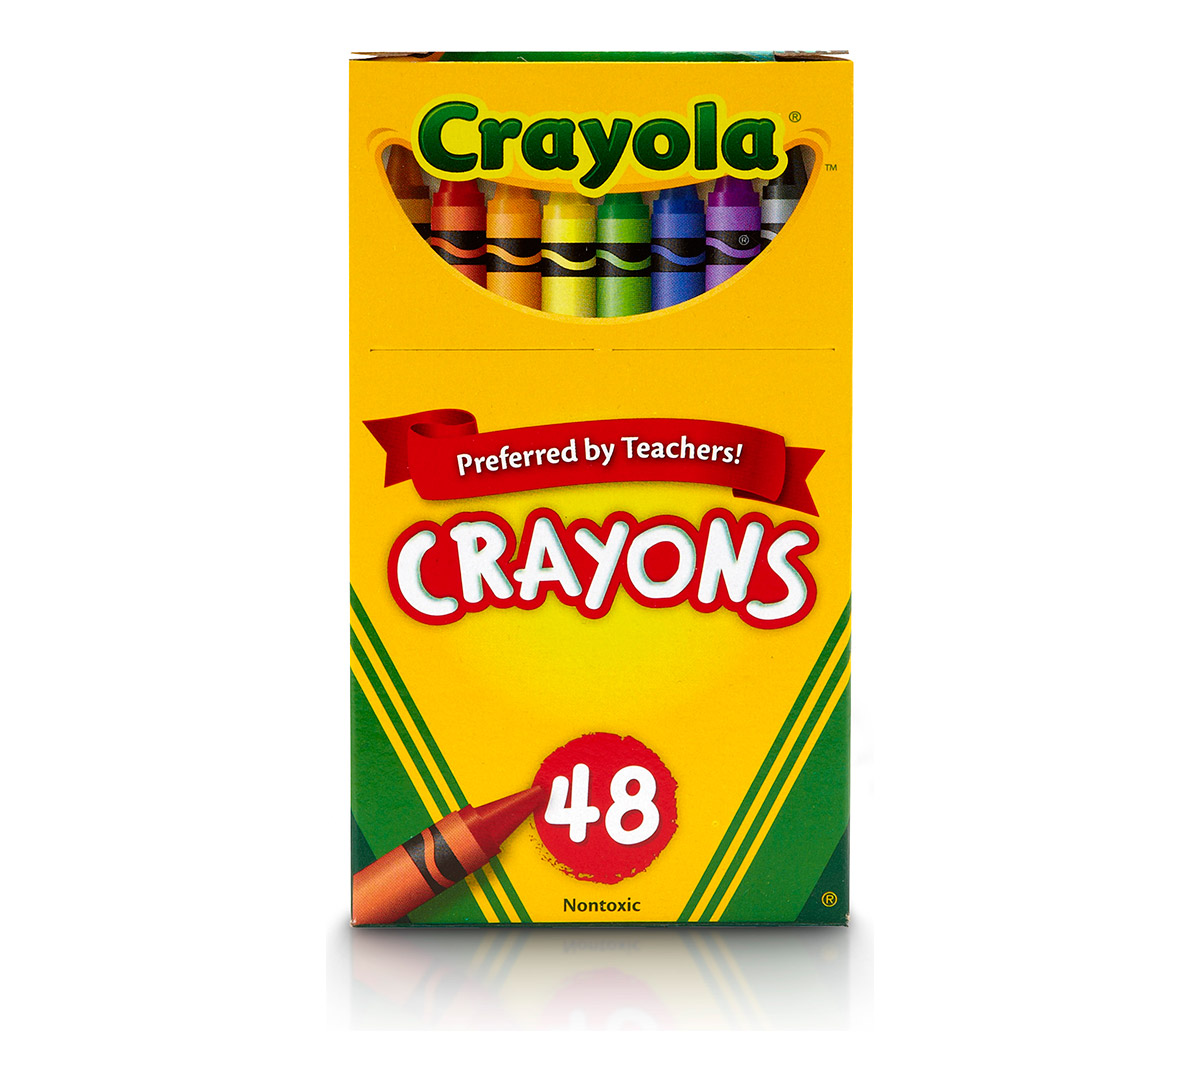 Crayola Classic Crayons, Multicolor - 8 count